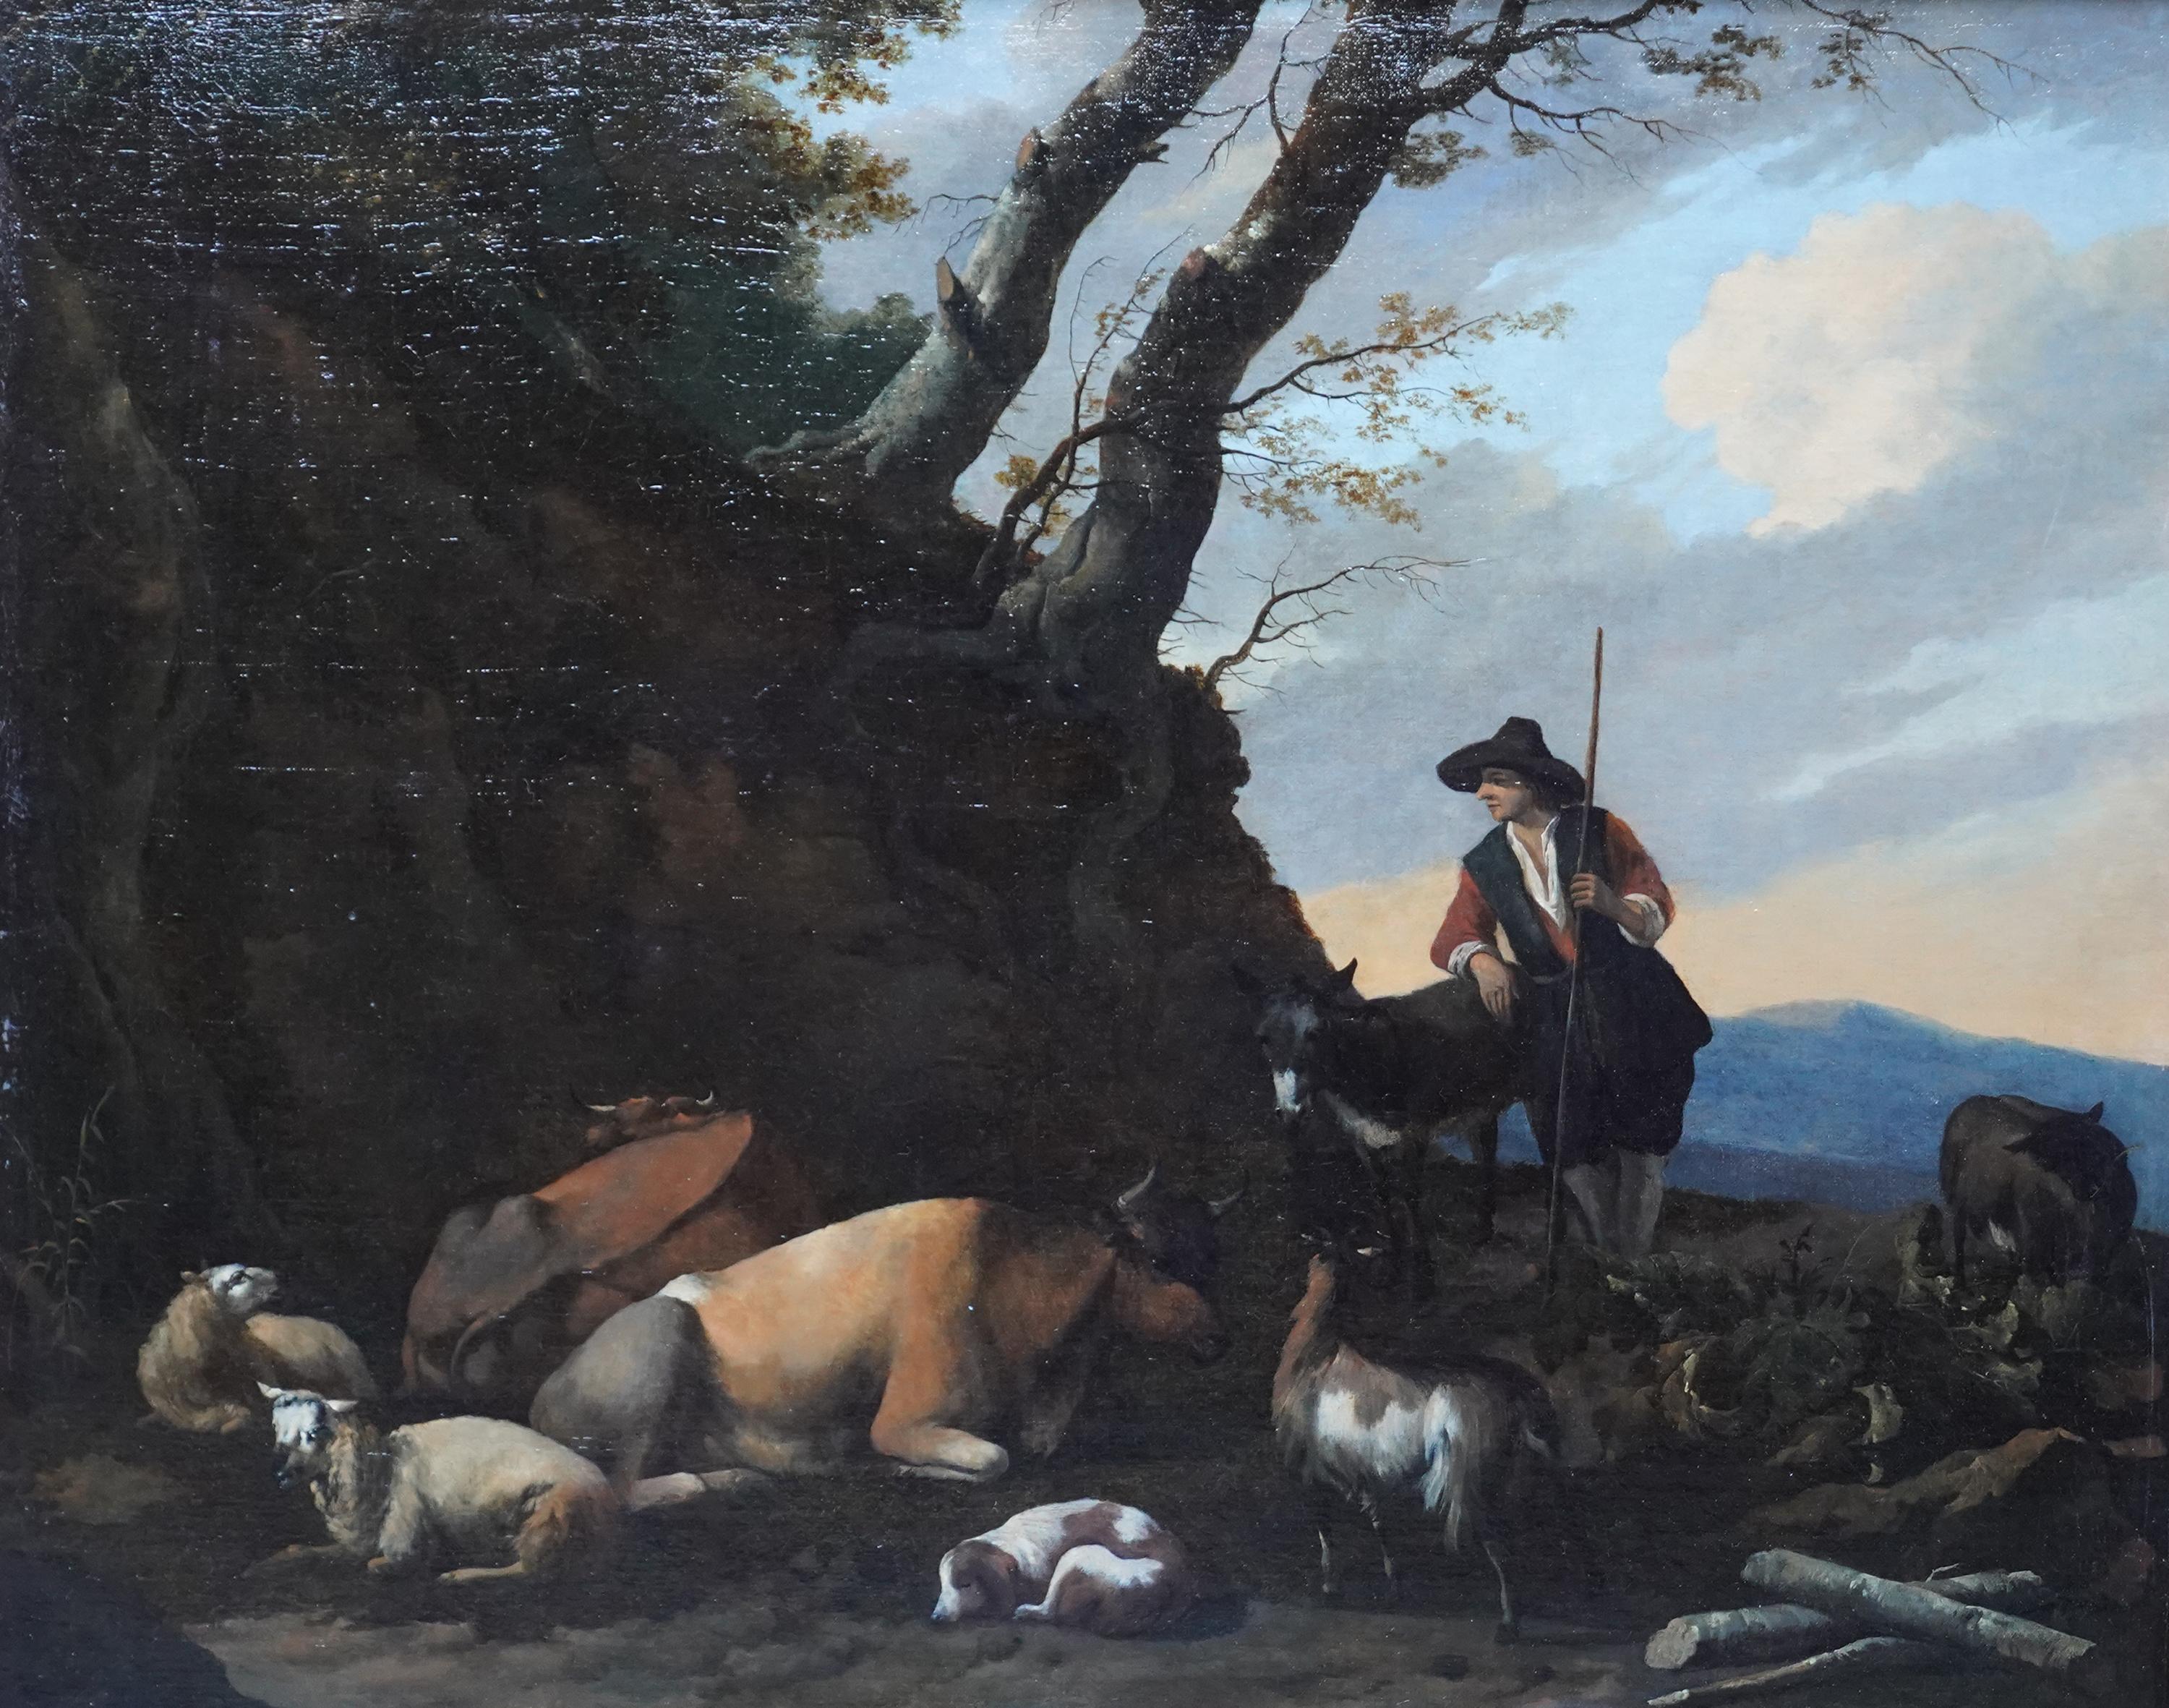 Hirte mit Tieren in Landschaft – niederländisches pastorales Ölgemälde eines alten Meisters  – Painting von Nicolaes Berchem